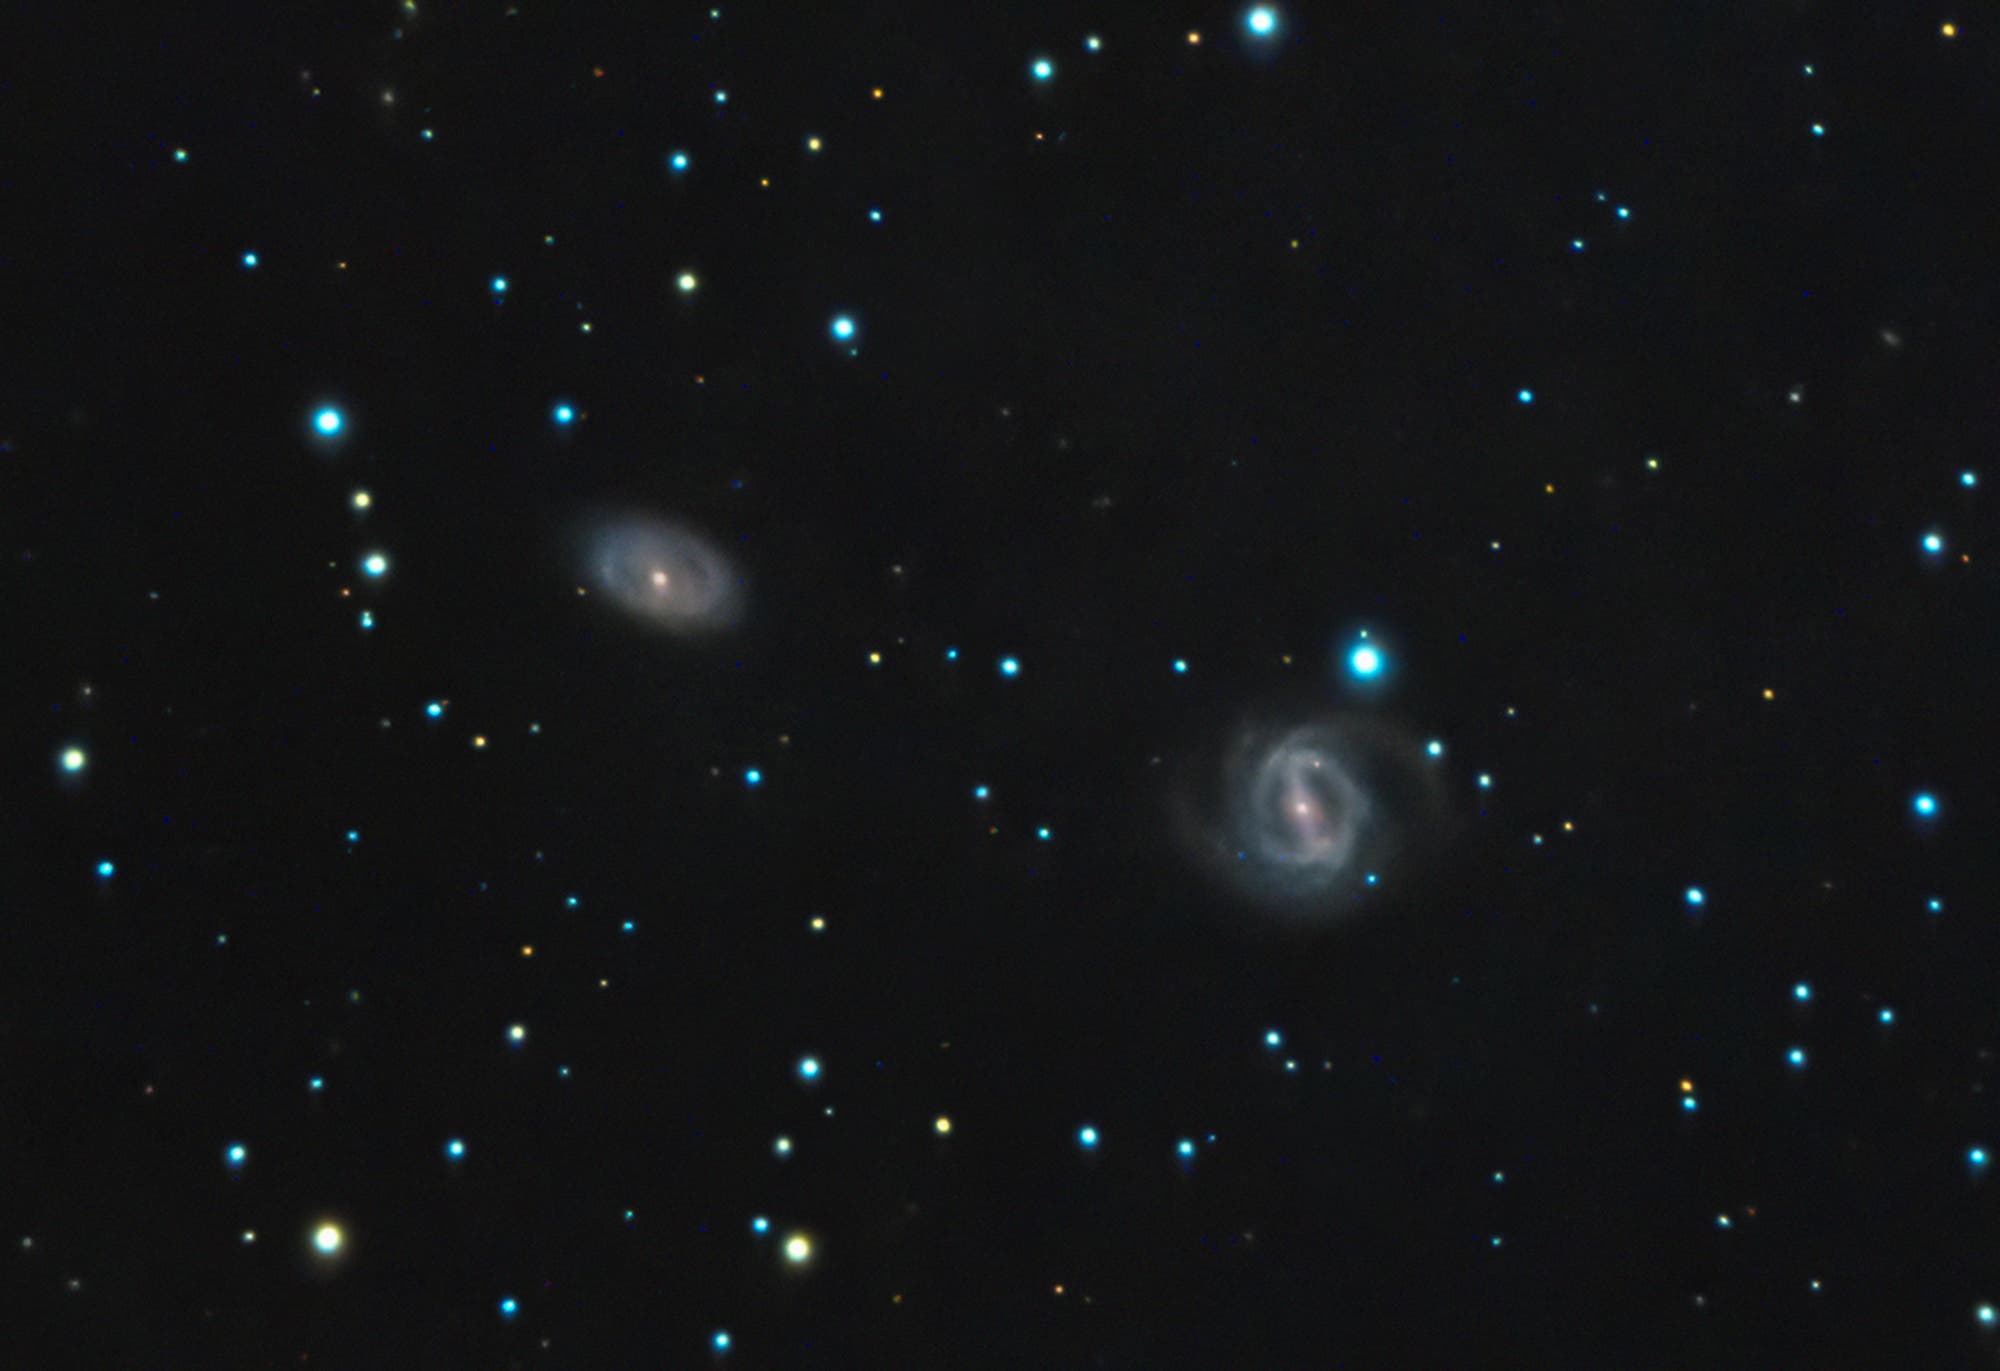 Target galaxies NGC 2486/87